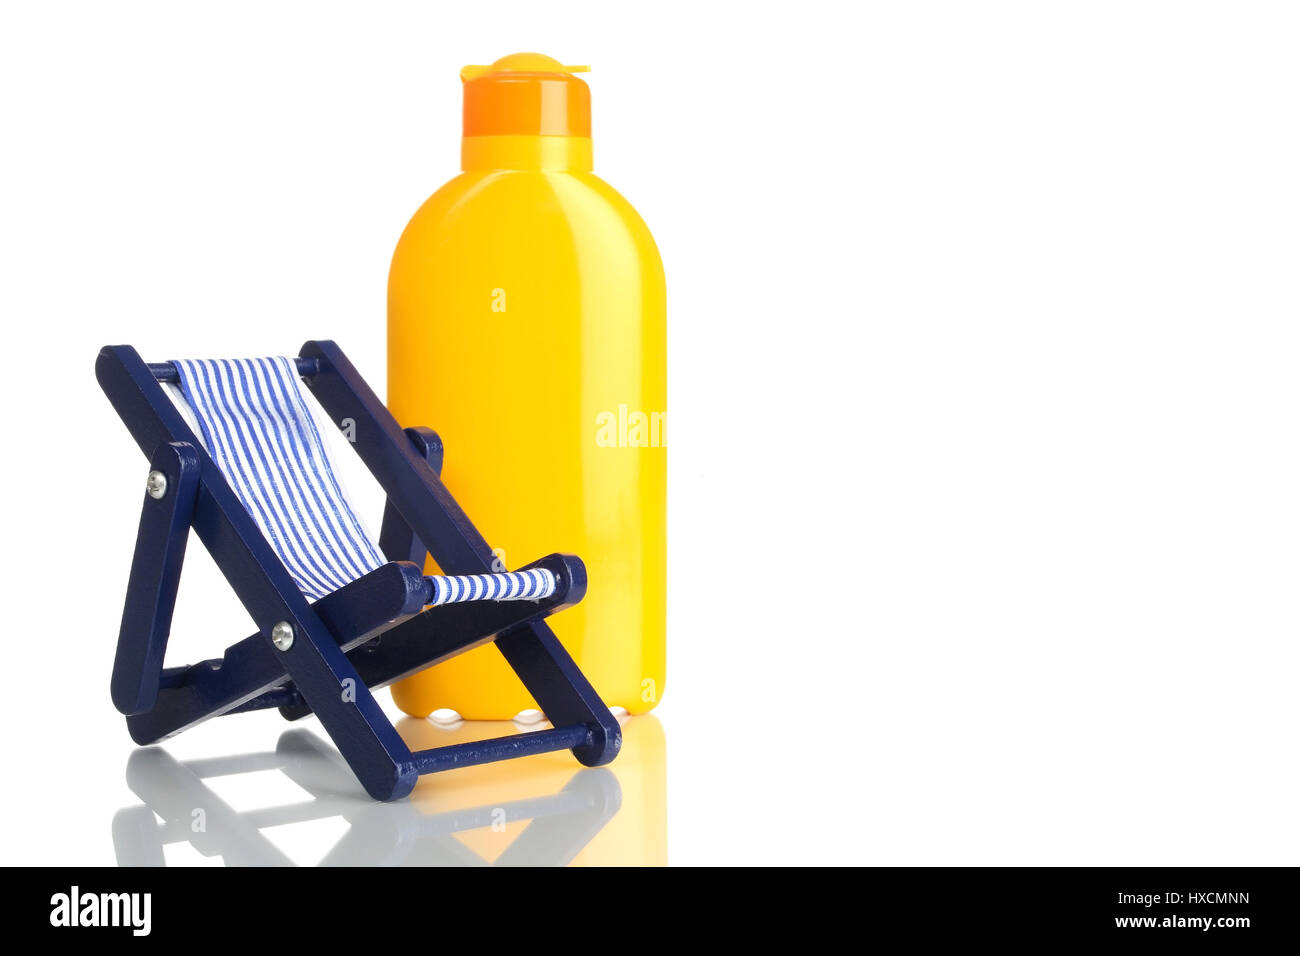 Deck chair with solar cream, Liegestuhl mit Sonnencreme Stock Photo